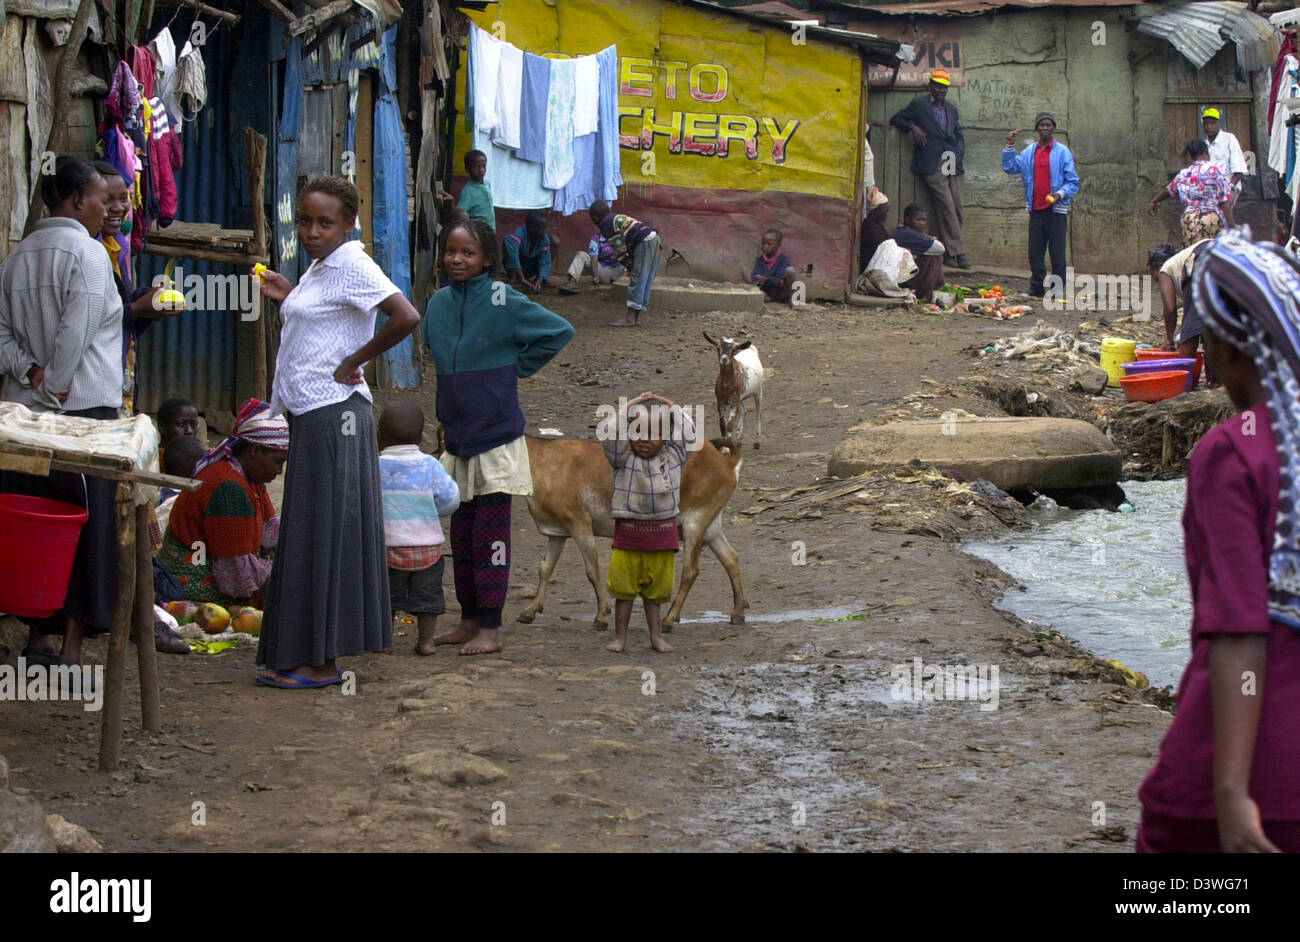 Kibera slum in Nairobi, Kenya Stock Photo